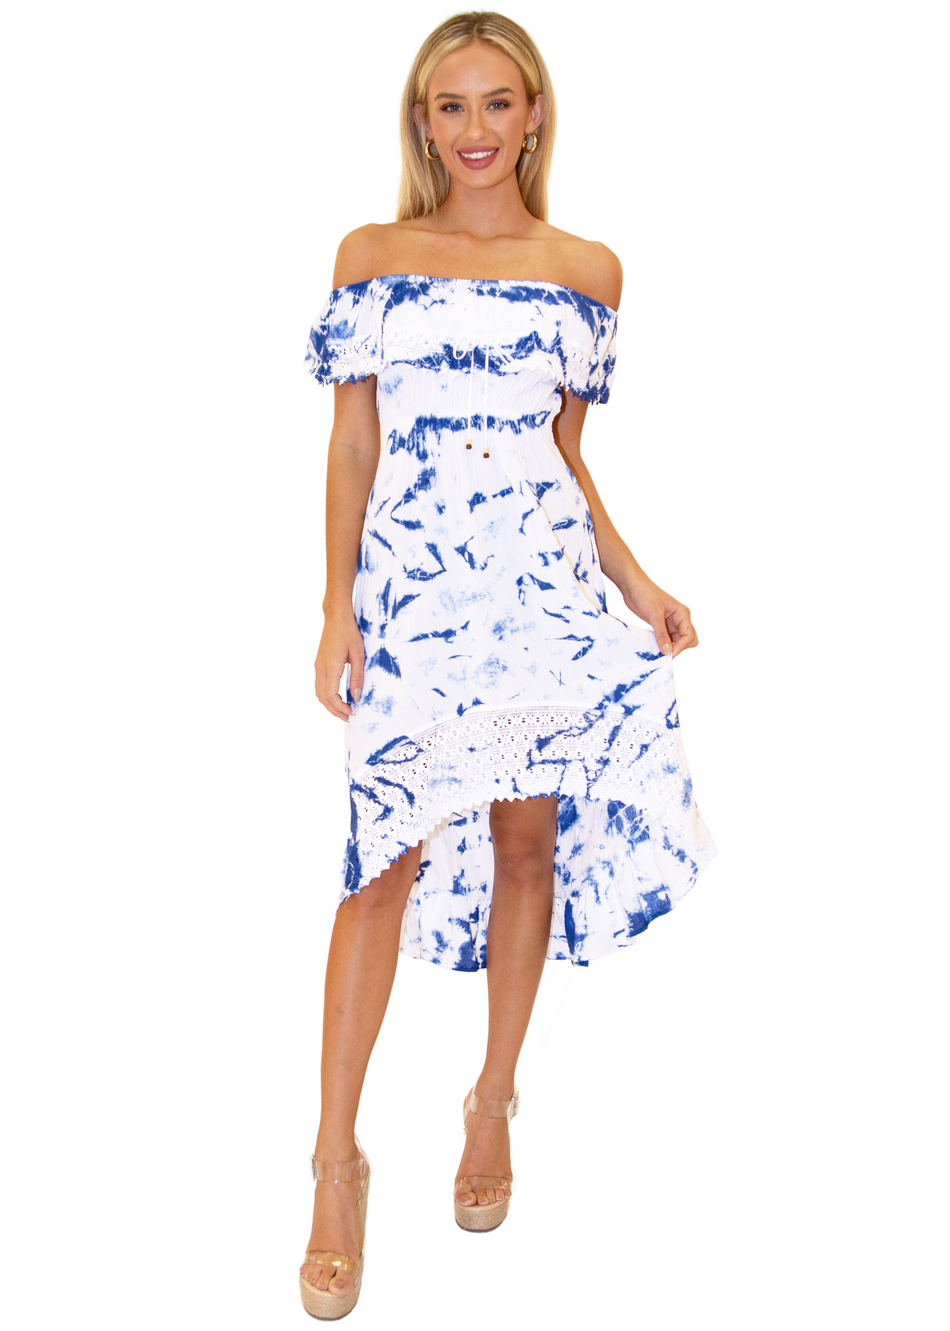 NW1083 - Tie Dye Blue Cotton Dress